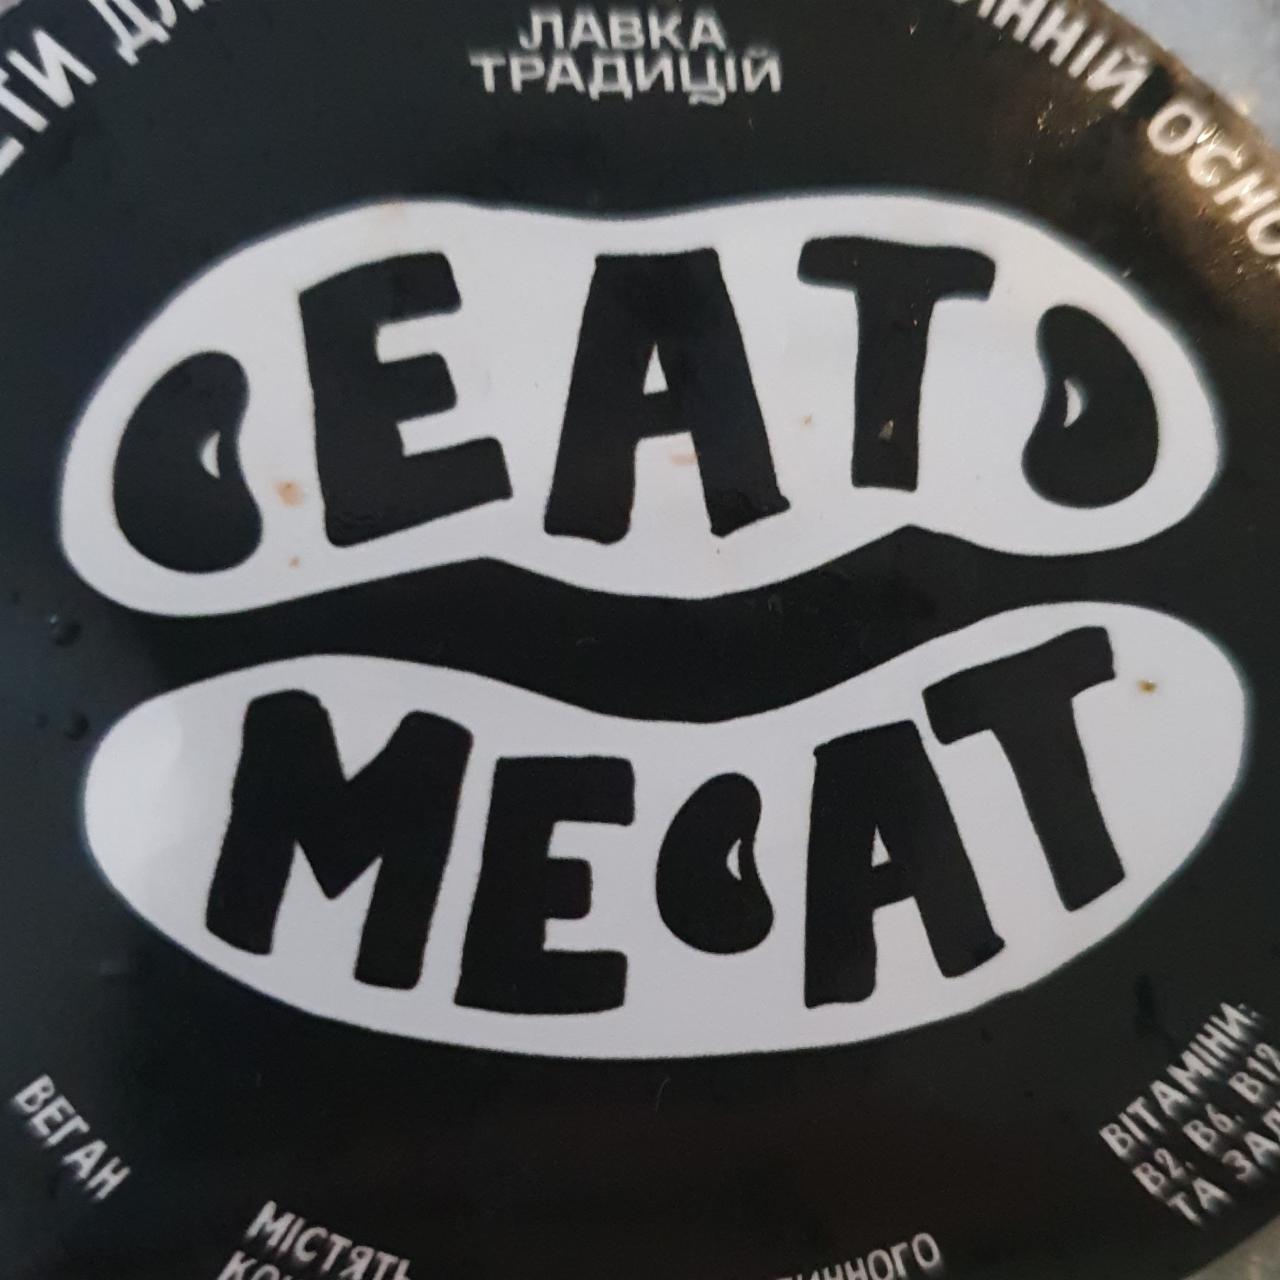 Фото - Веган котлеты Eat Meat Лавка Традицій